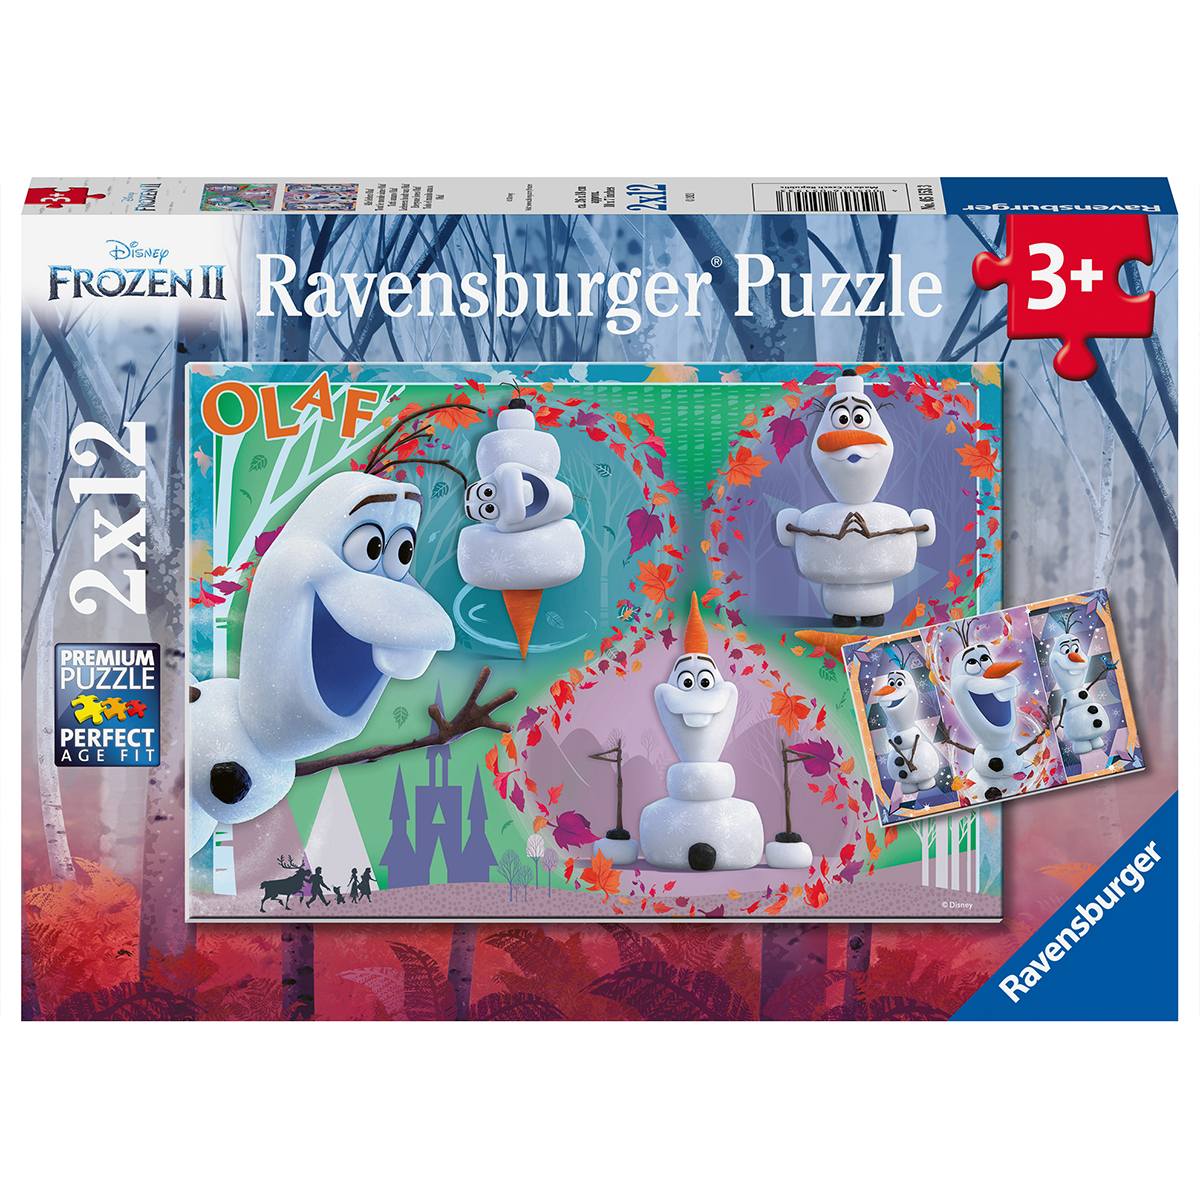 Ravensburger 2 puzzle 12 pezzi per bambini dai 3 anni - disney frozen - DISNEY PRINCESS, RAVENSBURGER, Frozen